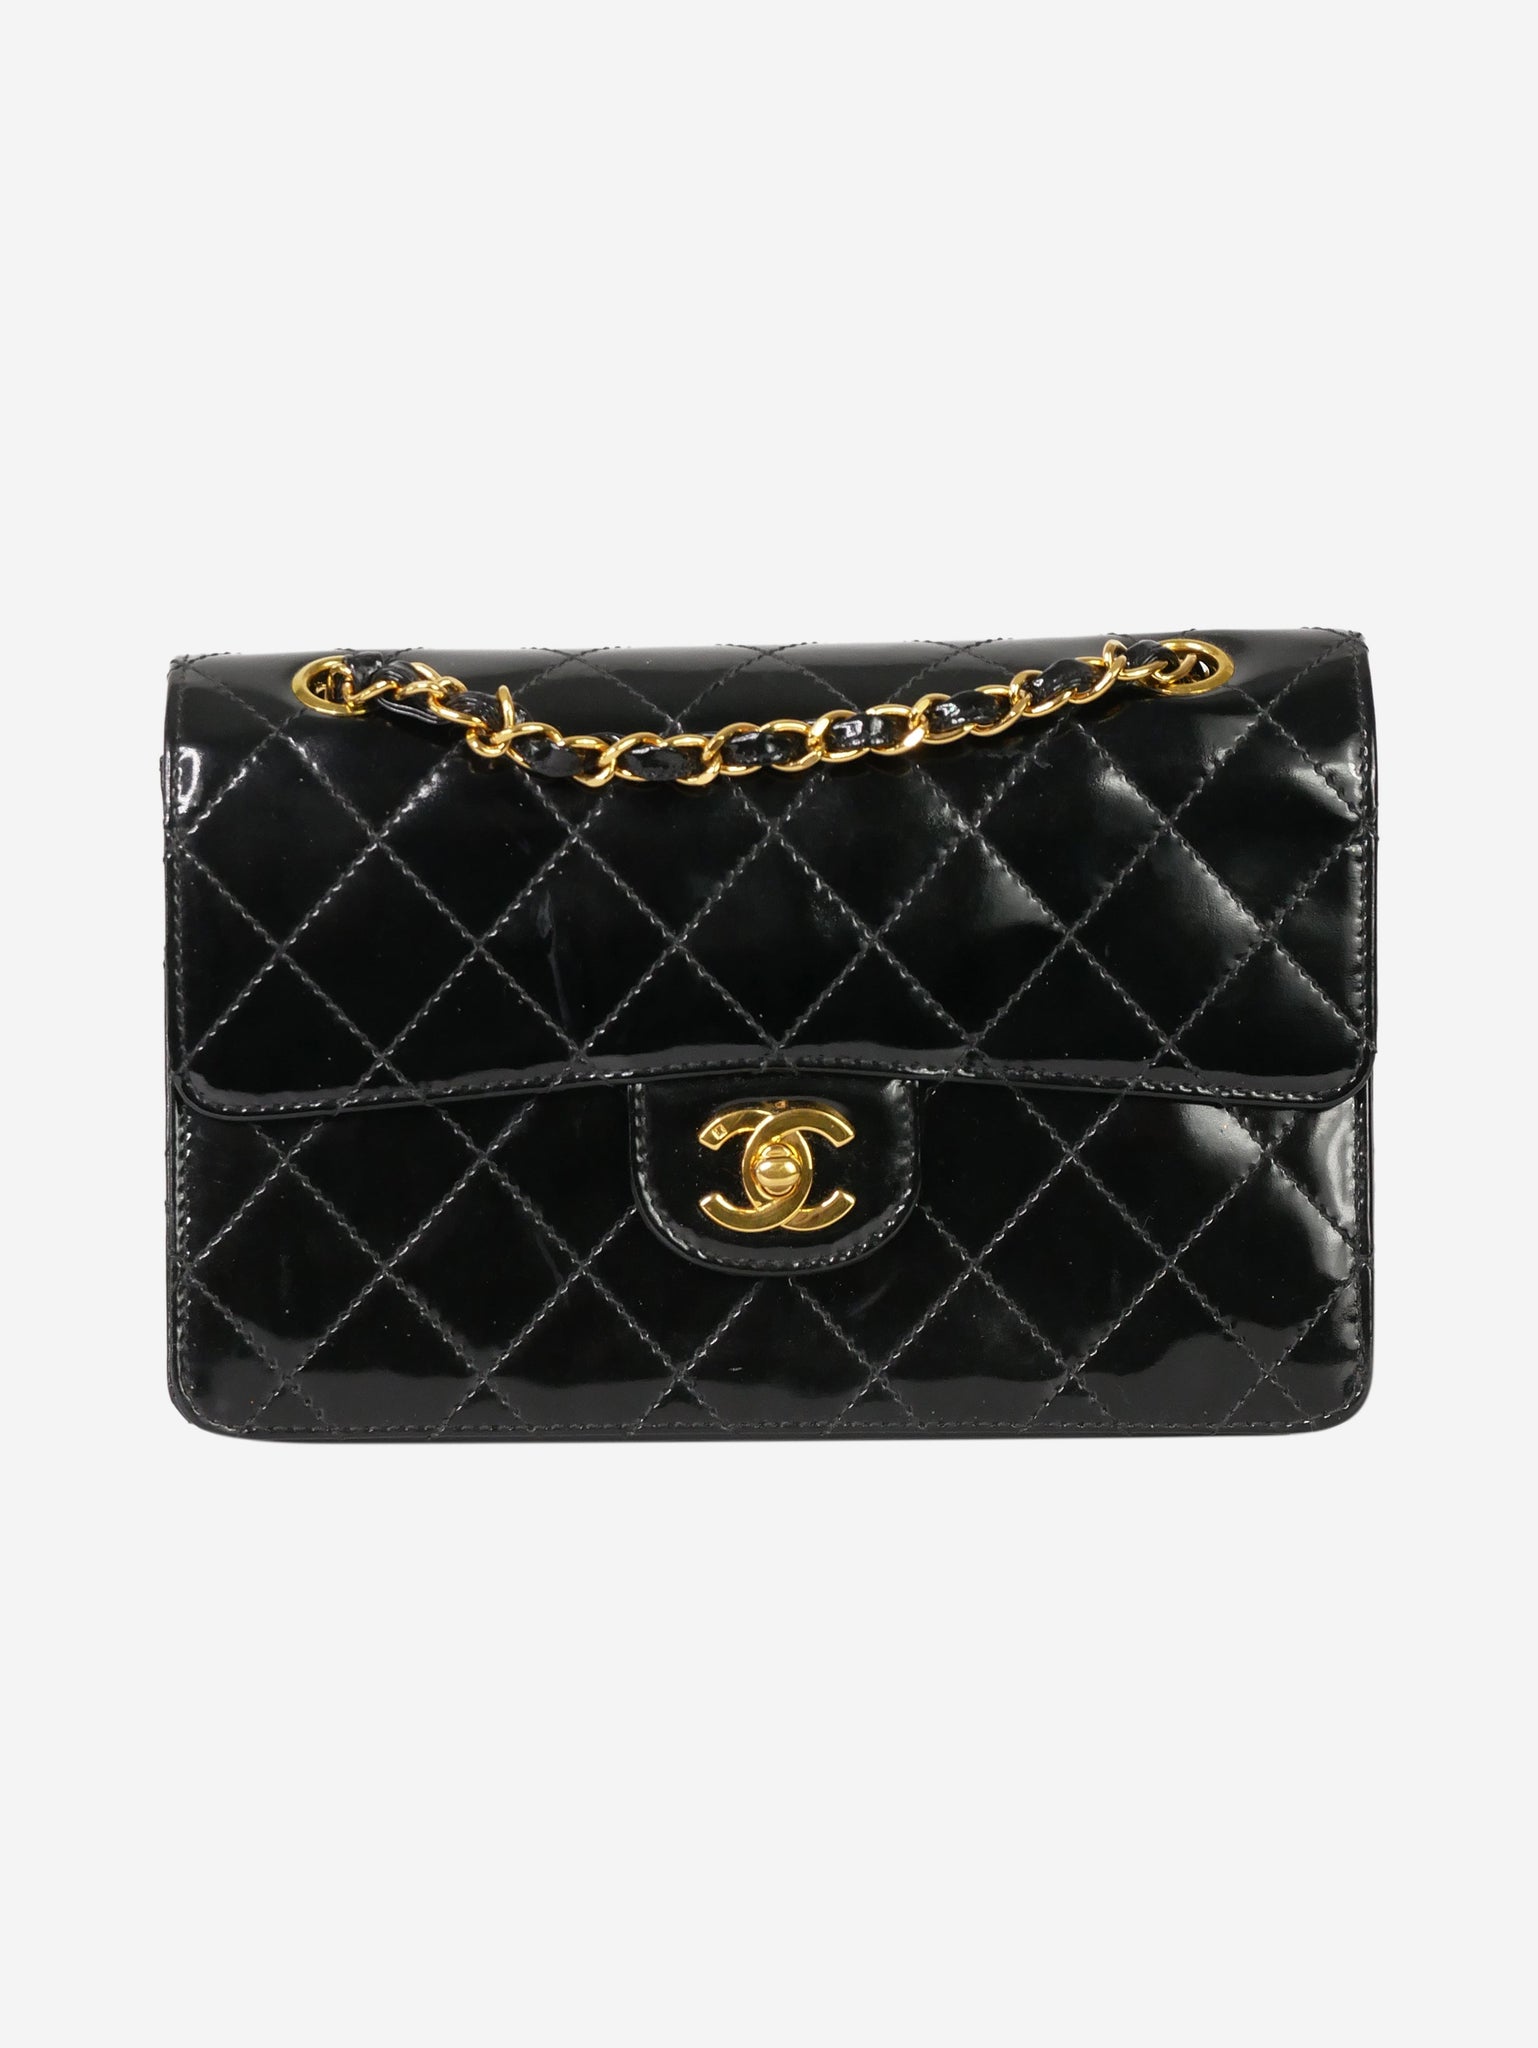 International Sell Preowned Chanel Bags Store  Bán Túi Chanel Đã Sử Dụng